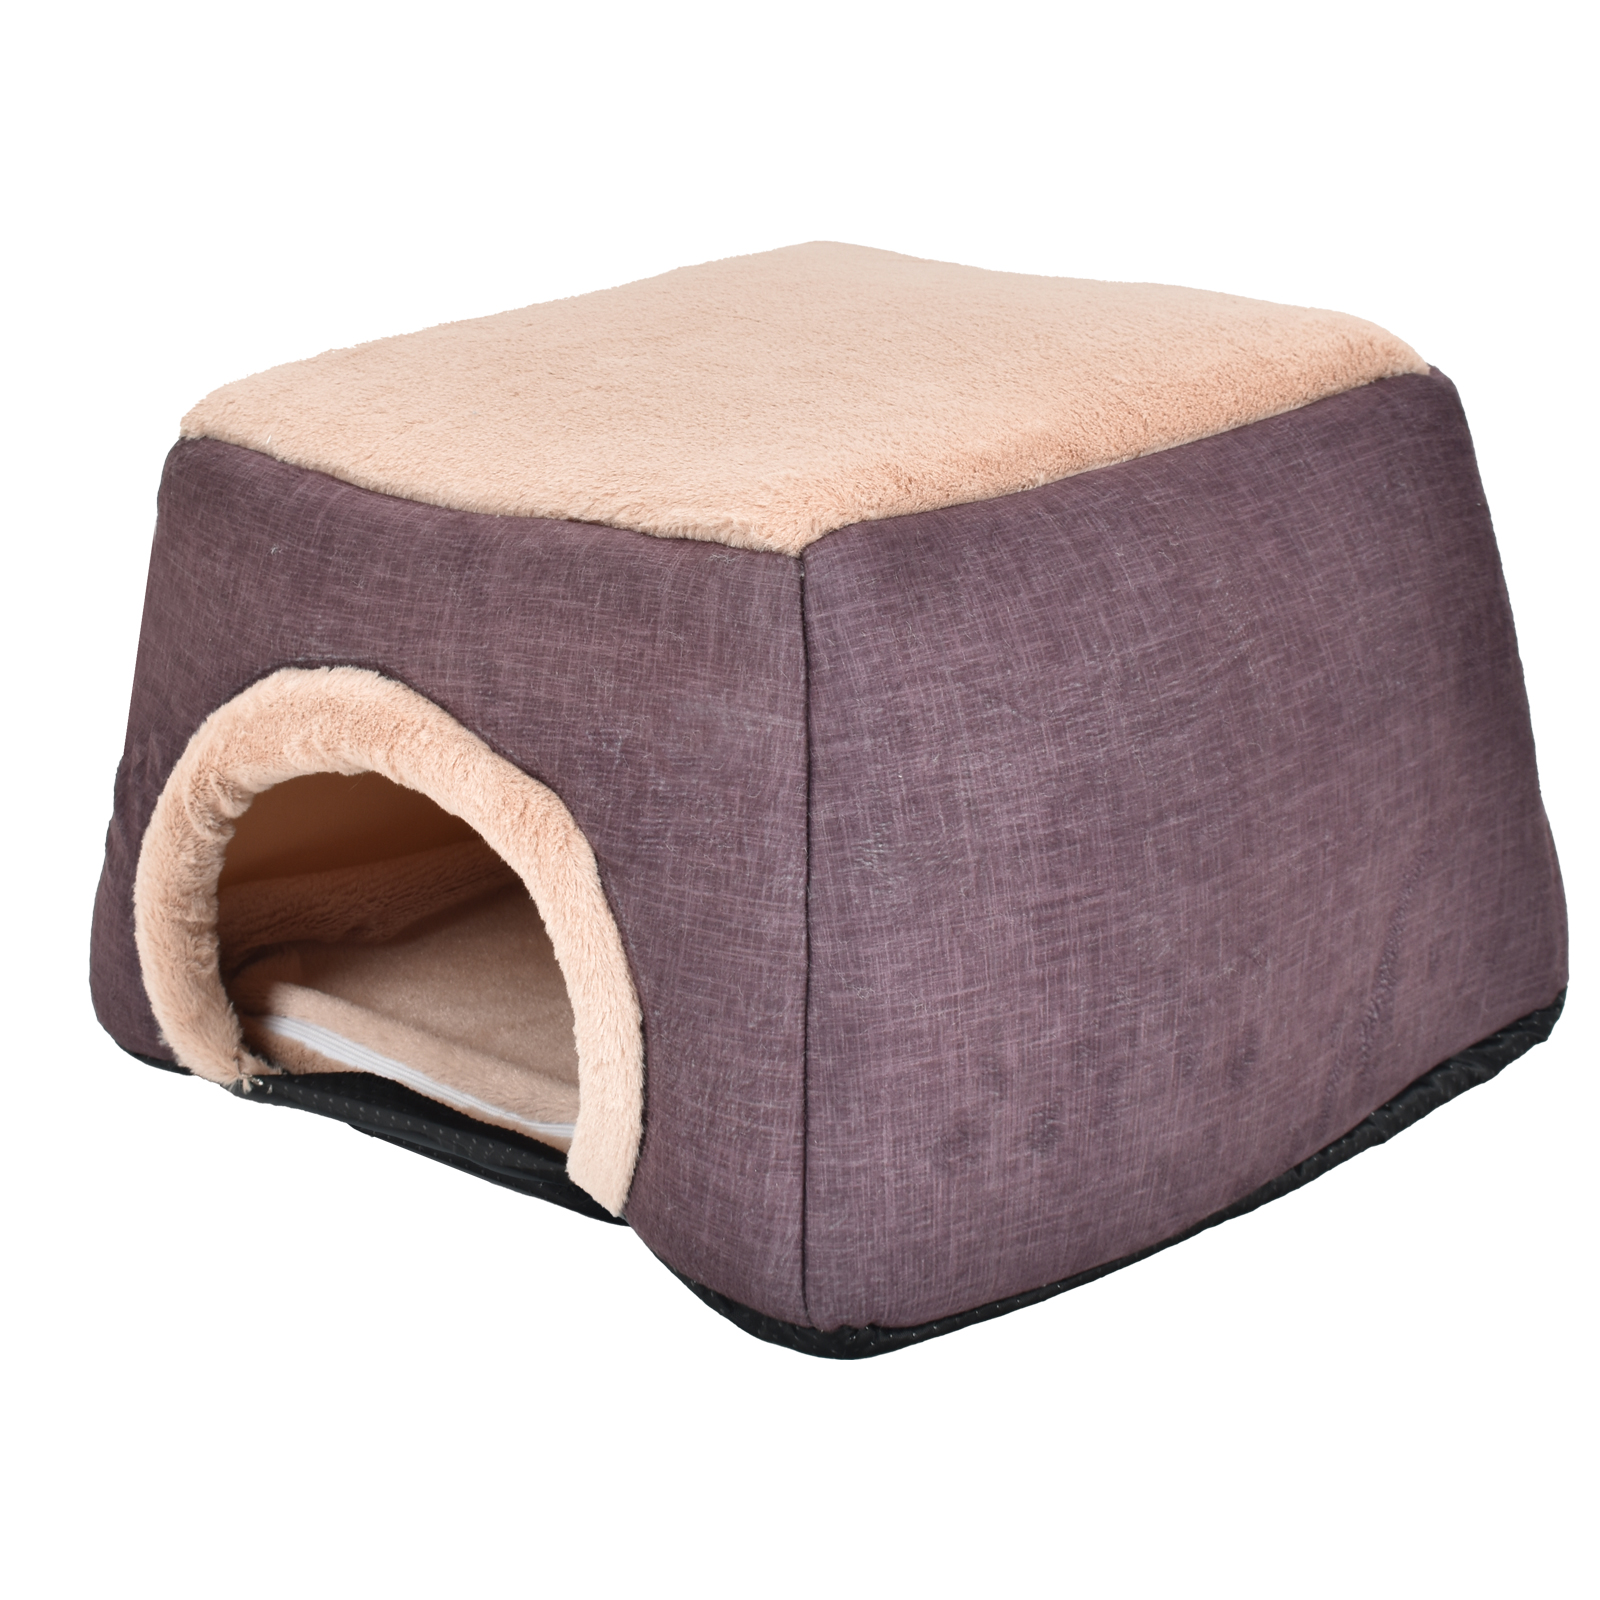 こたつ 布団 テーブル ホットカーペット セット カーペット ペットベッド 正方形 おしゃれ まるでこたつ ヒーター ダイニング 省スペース 猫 小型犬 ミニ 電気